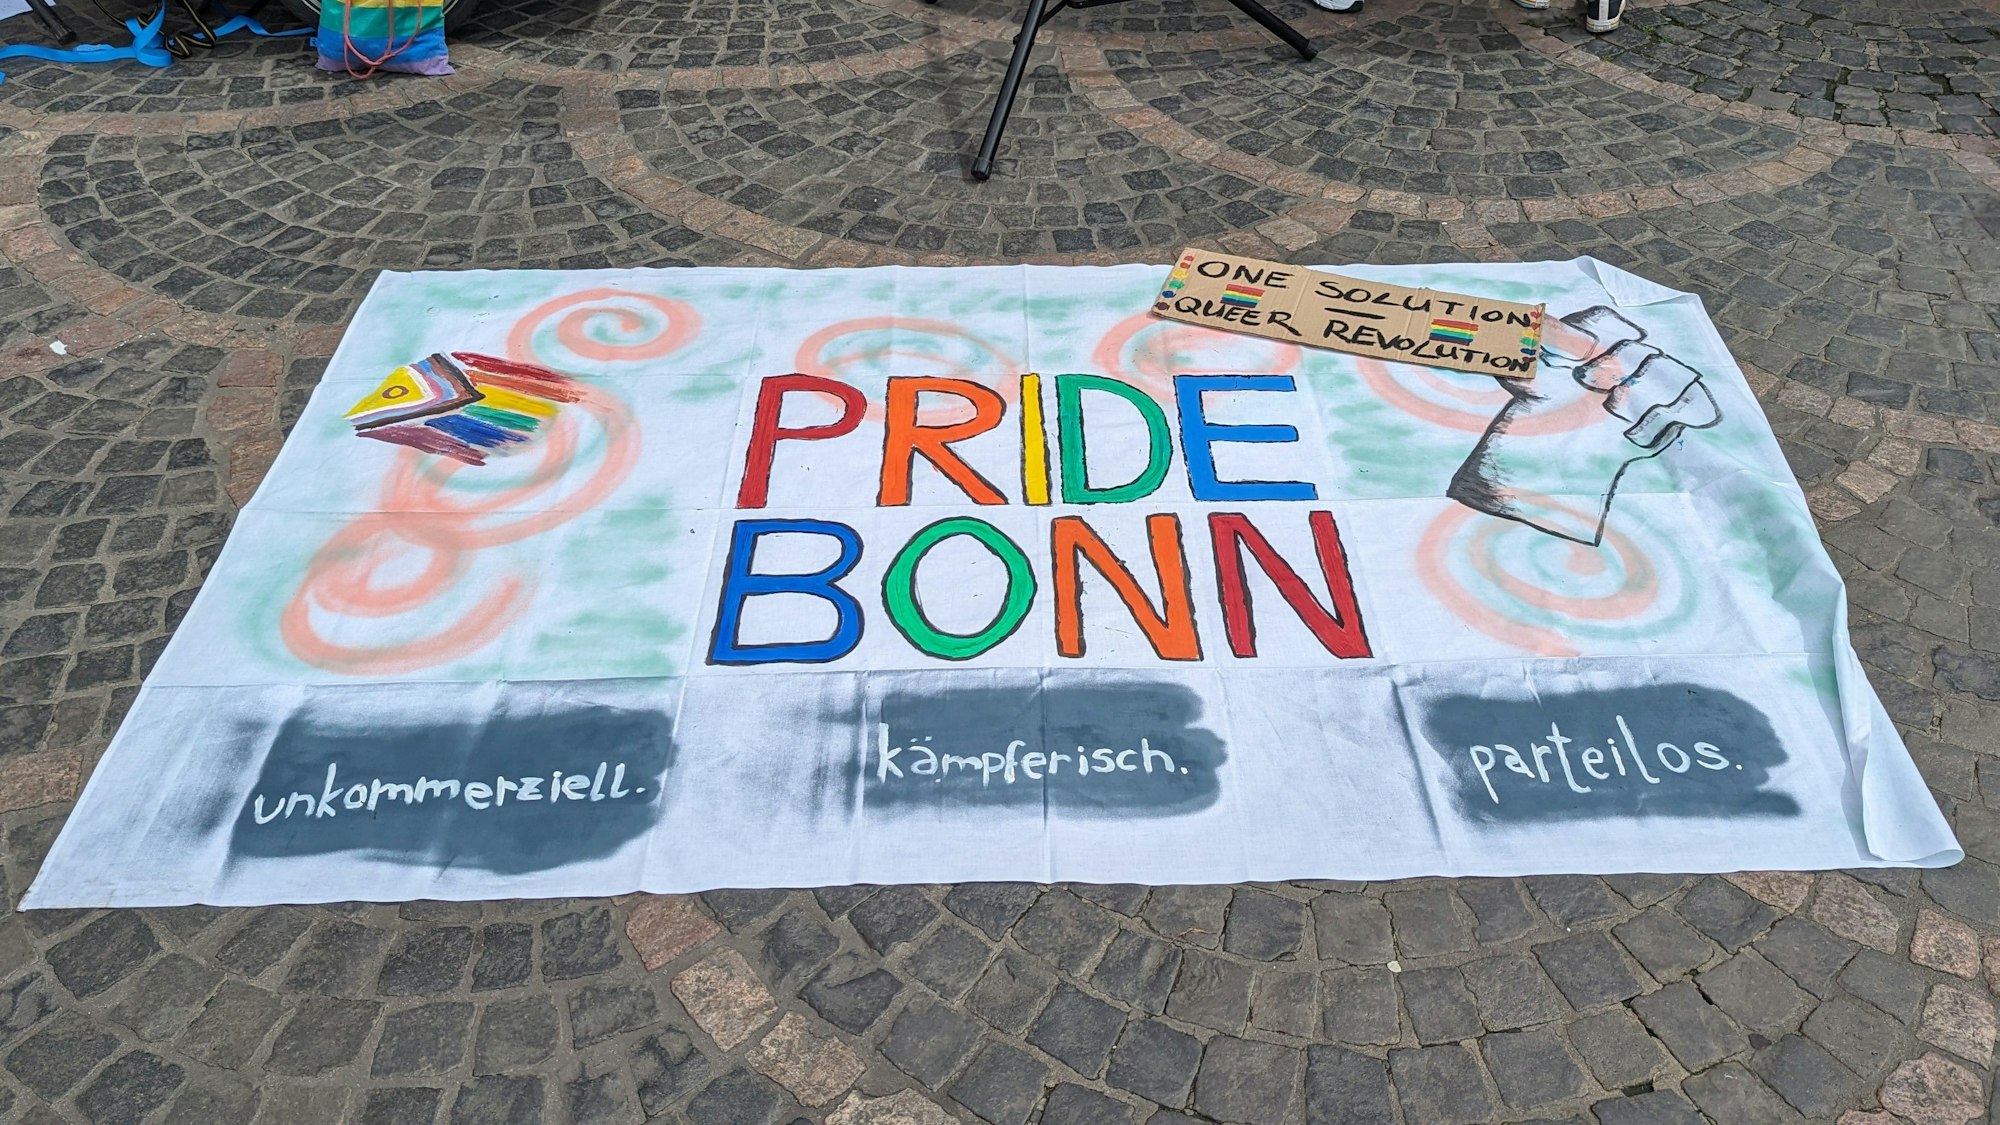 „Pride Bonn“ steht auf dem Banner, außerdem „unkommerziell, kämpferisch und parteilos“.